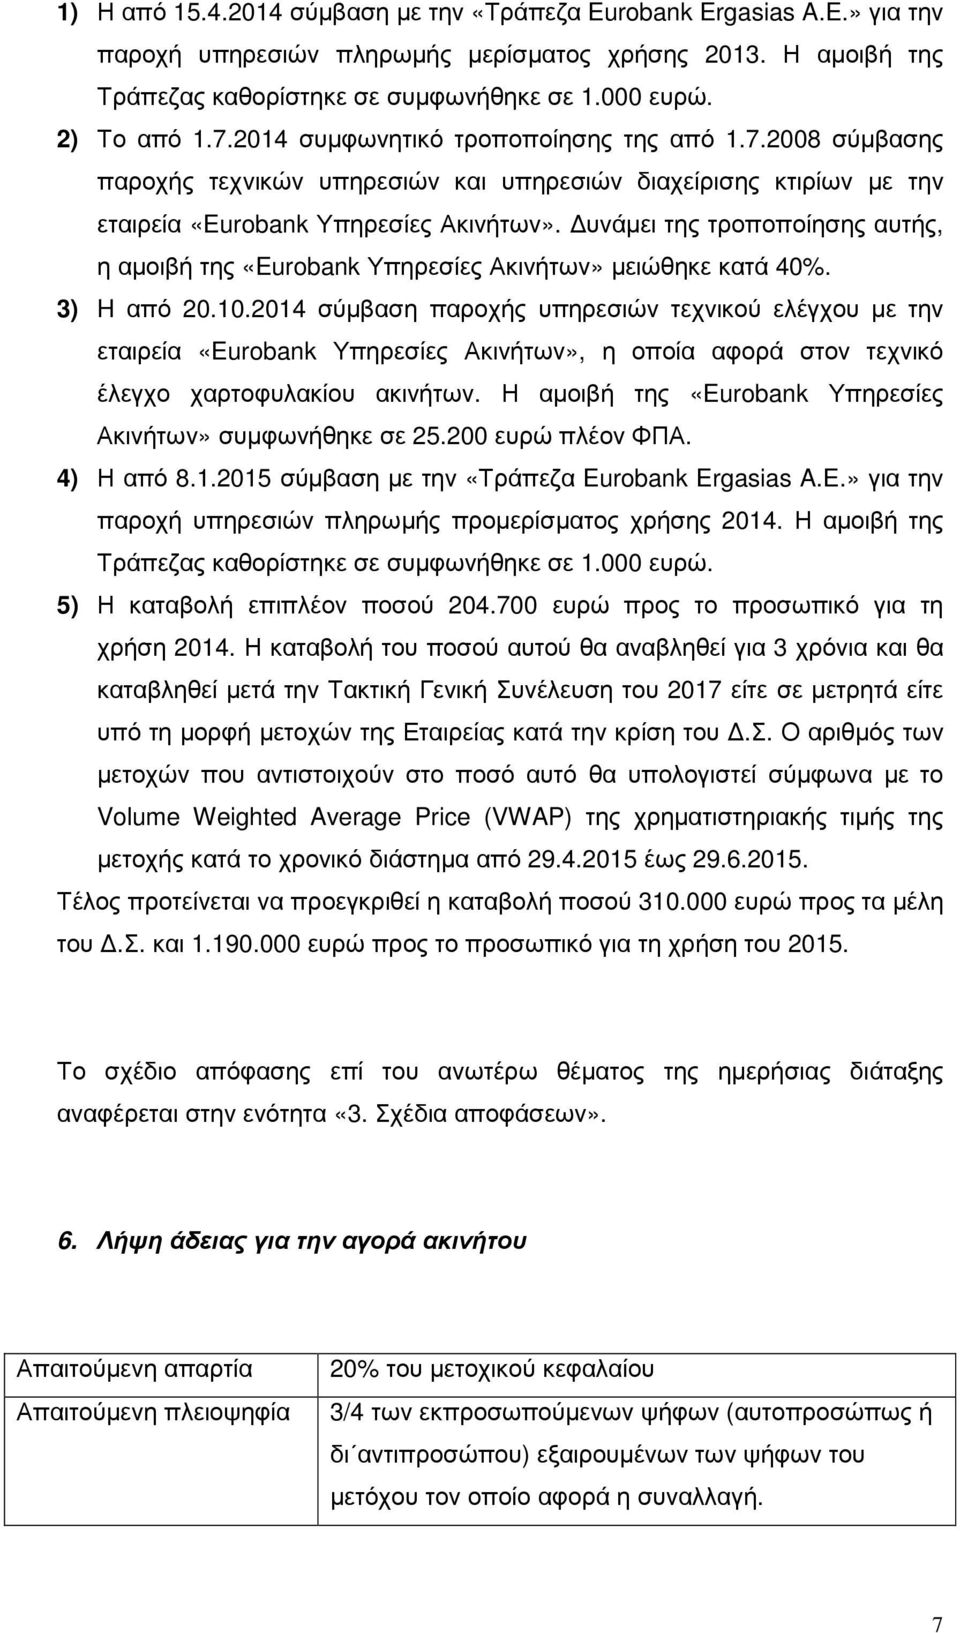 υνάµει της τροποποίησης αυτής, η αµοιβή της «Eurobank Υπηρεσίες Ακινήτων» µειώθηκε κατά 40%. 3) H από 20.10.